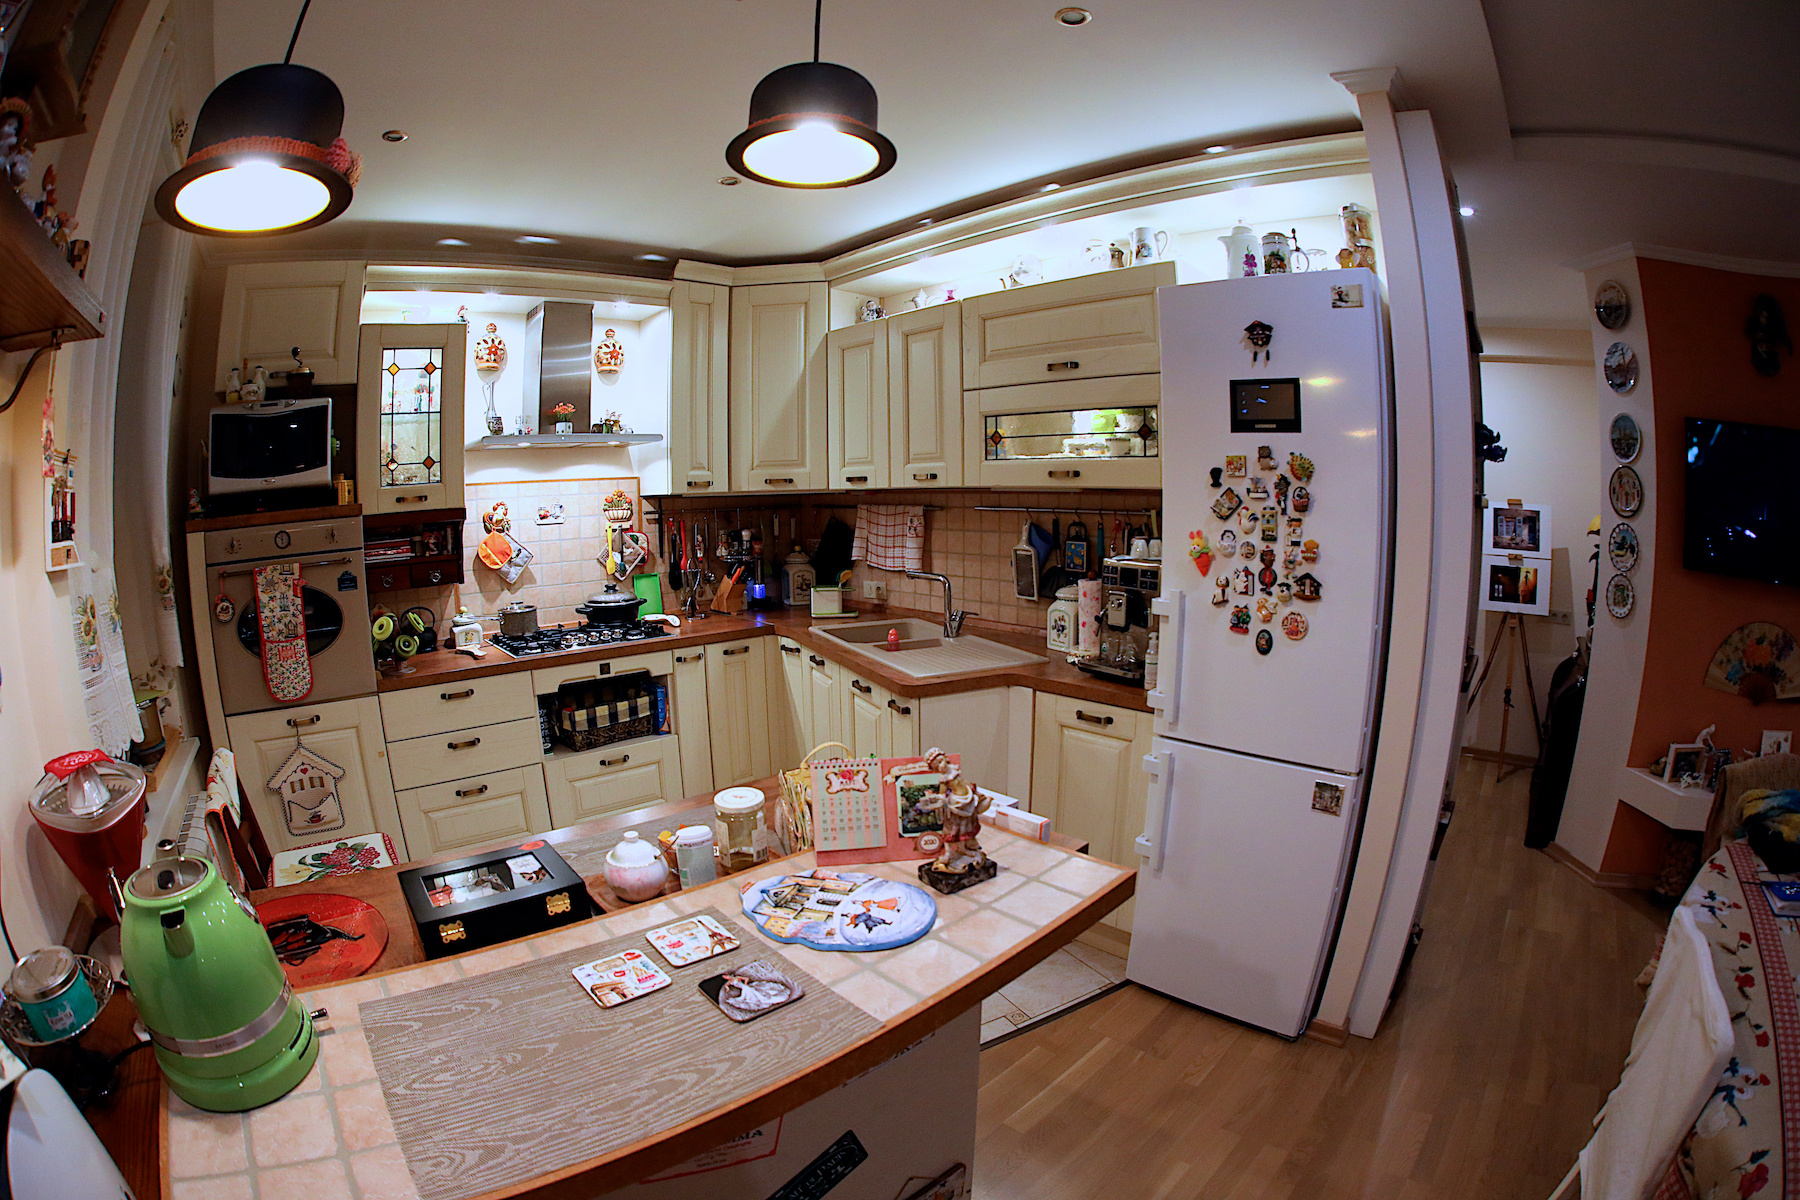 Just kitchen... interior kitchen french style Italy Alextennis furniture